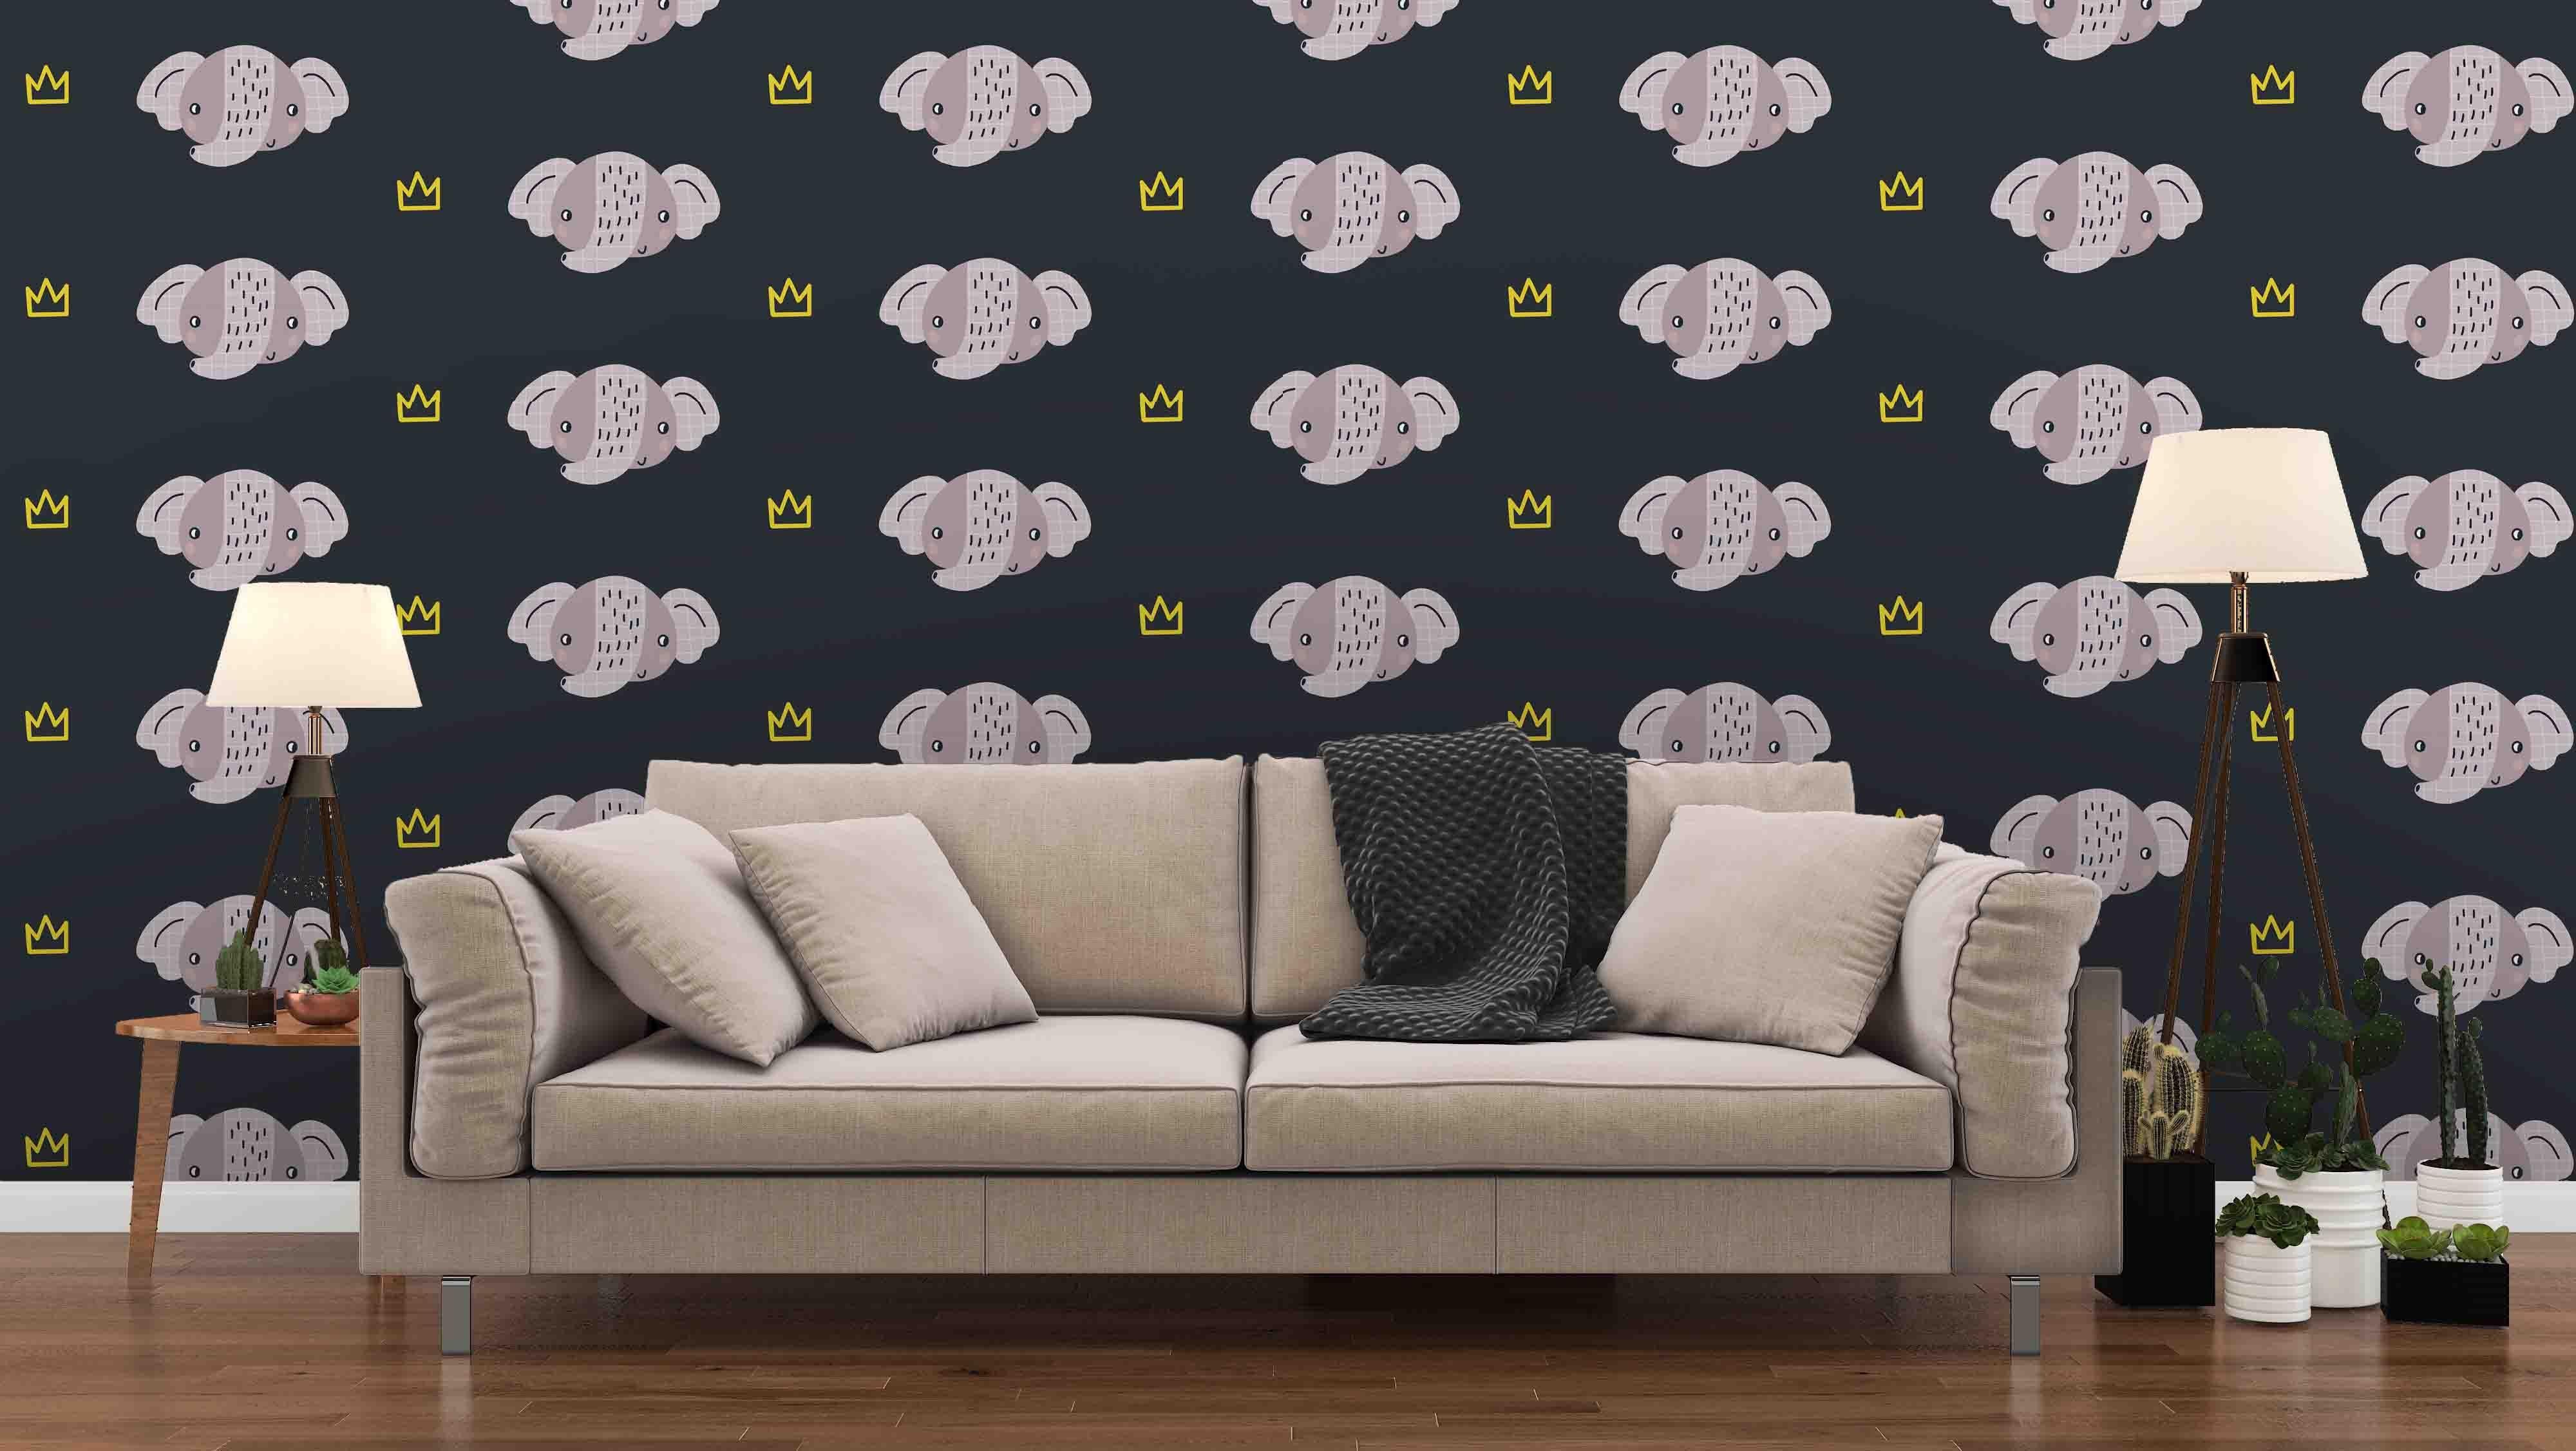 3D cartoon little elephant pattern wall mural wallpaper 33- Jess Art Decoration